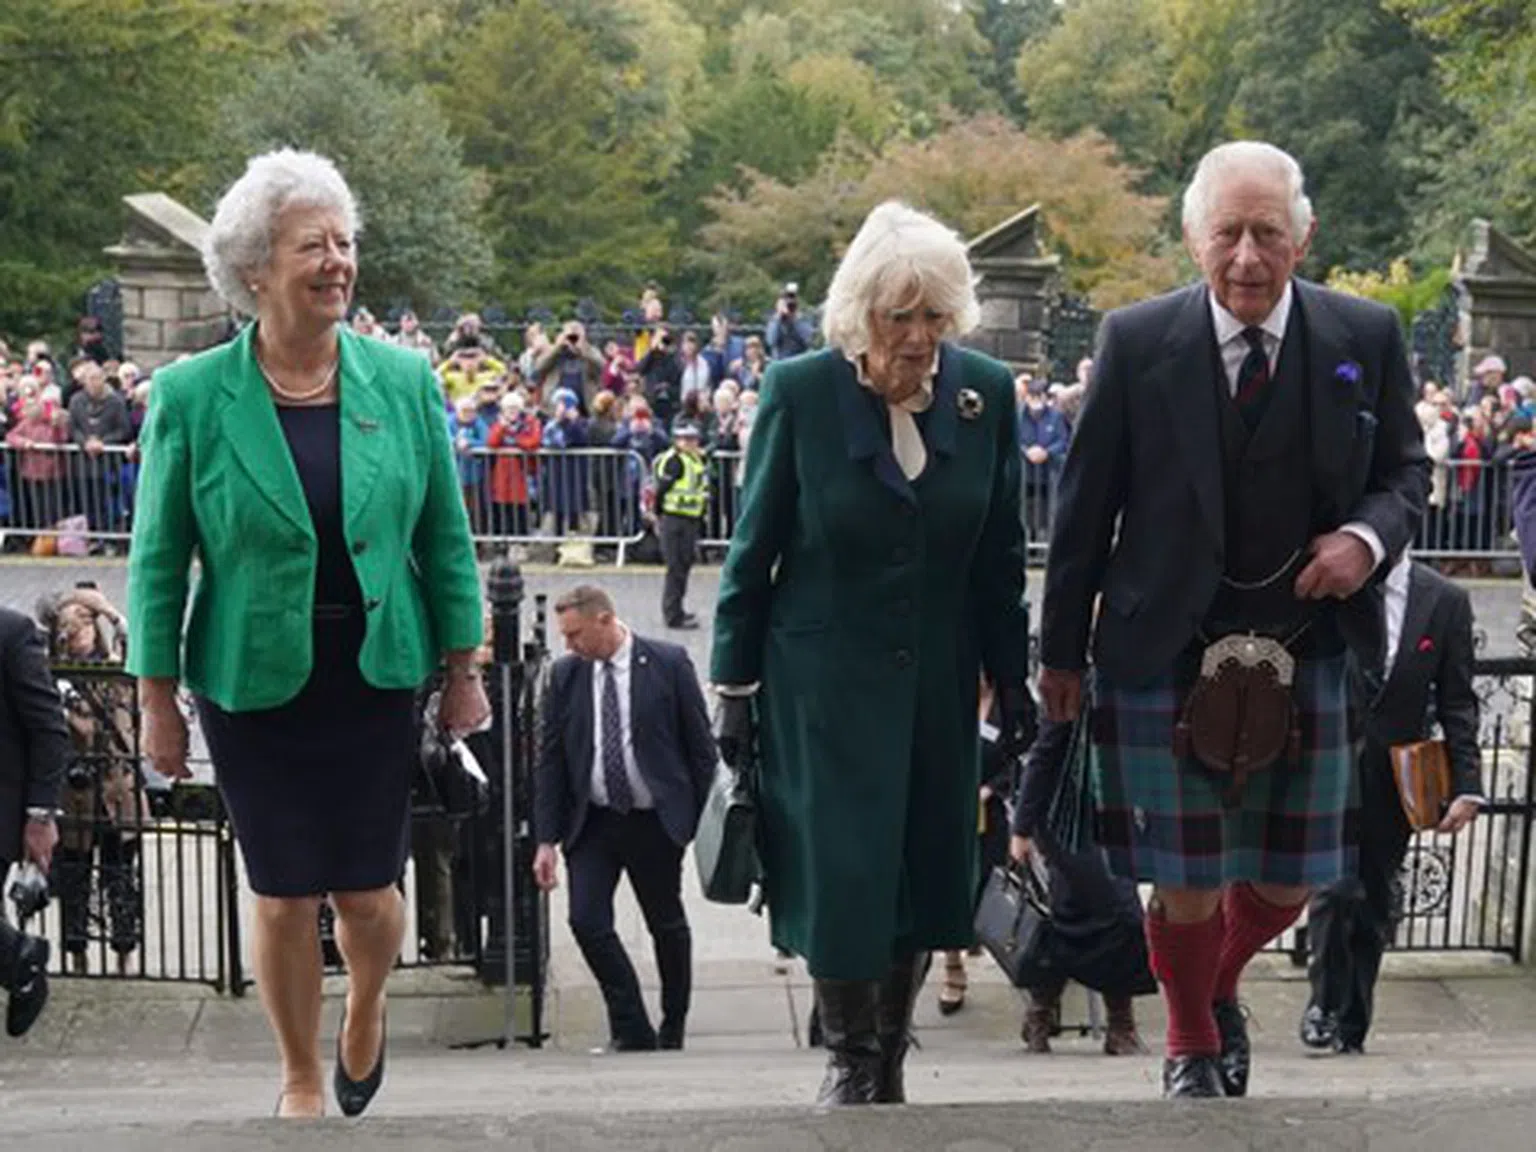 Край на траура: Вижте Крал Чарлз Трети в шотландска пола и широка усмивка (снимки)